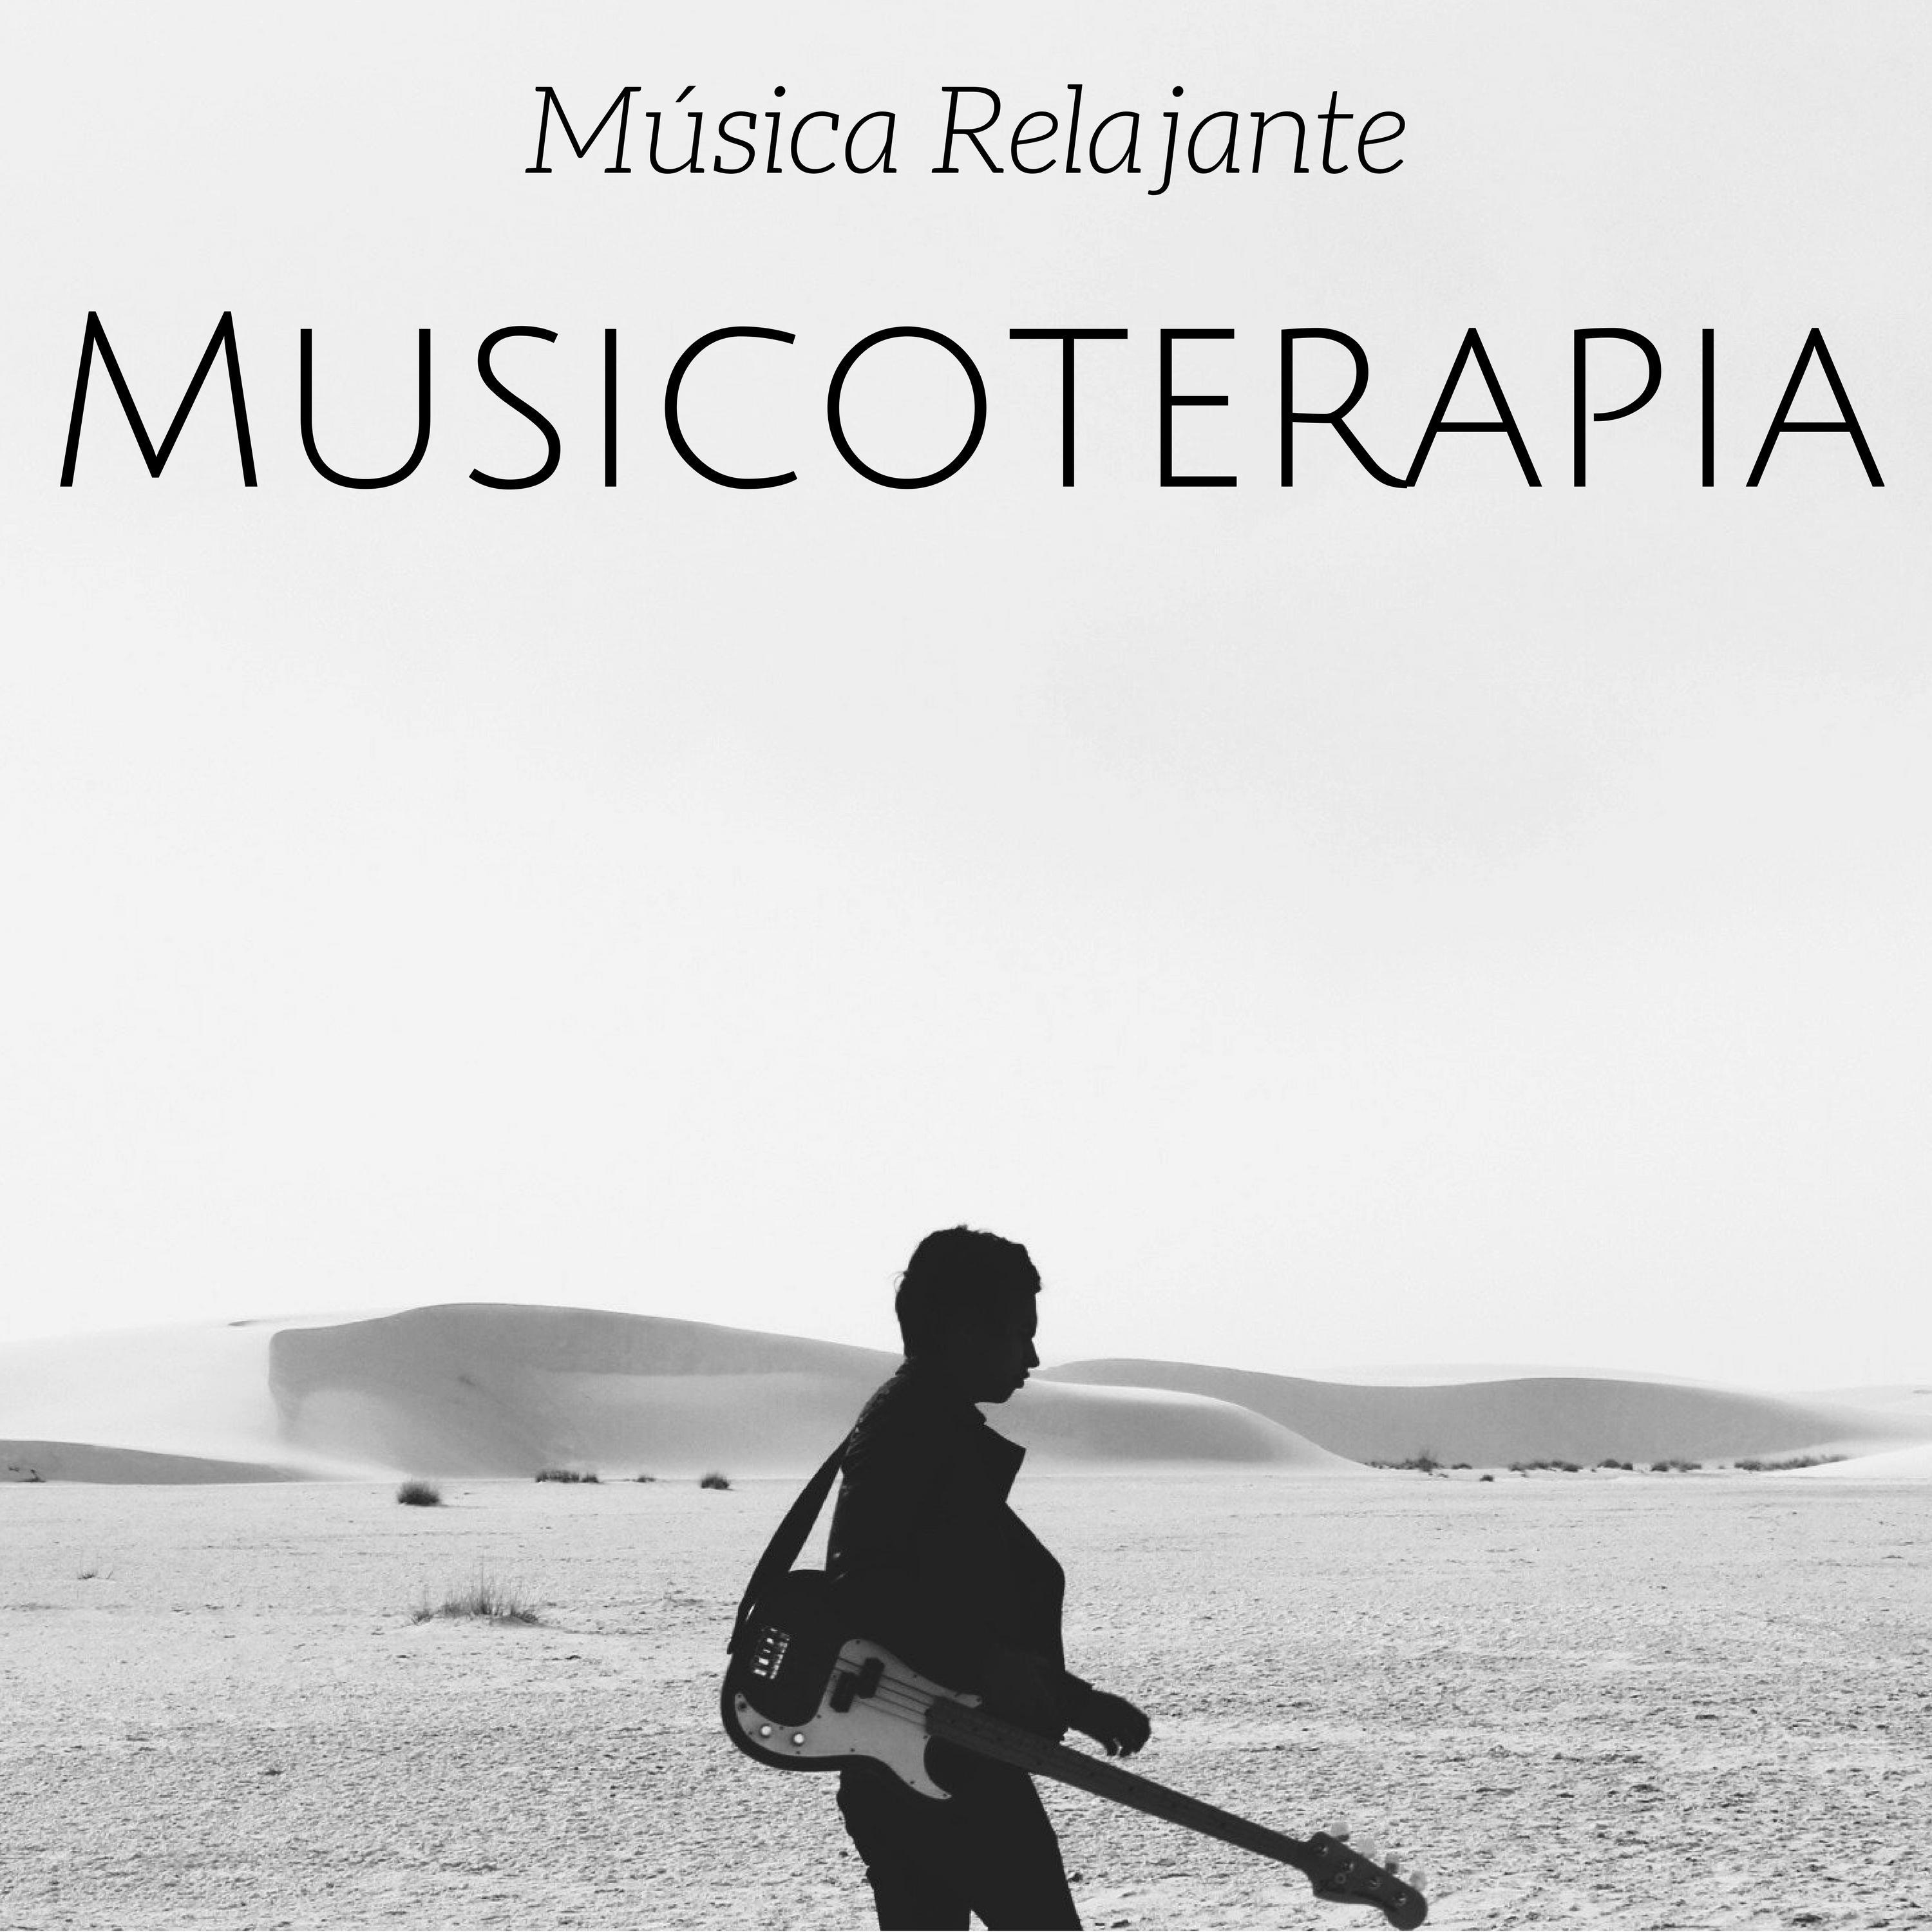 Musicoterapia  Mu sica Relajante Instrumental con los Sonidos Naturales para Cientros de Bienestar